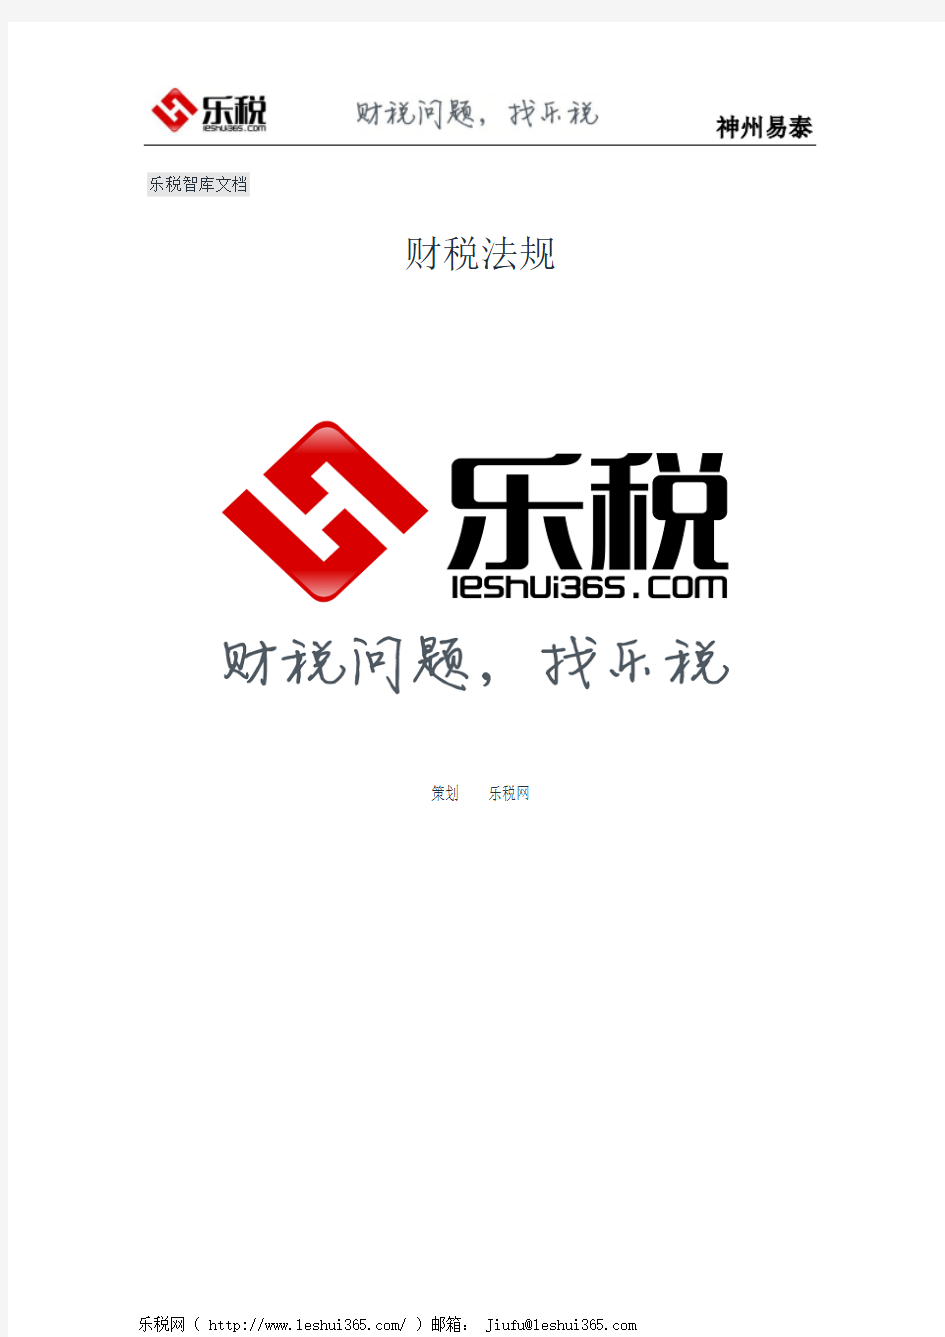 上海市地方税务局关于印发《上海市地方税务局关于本市个人使用的